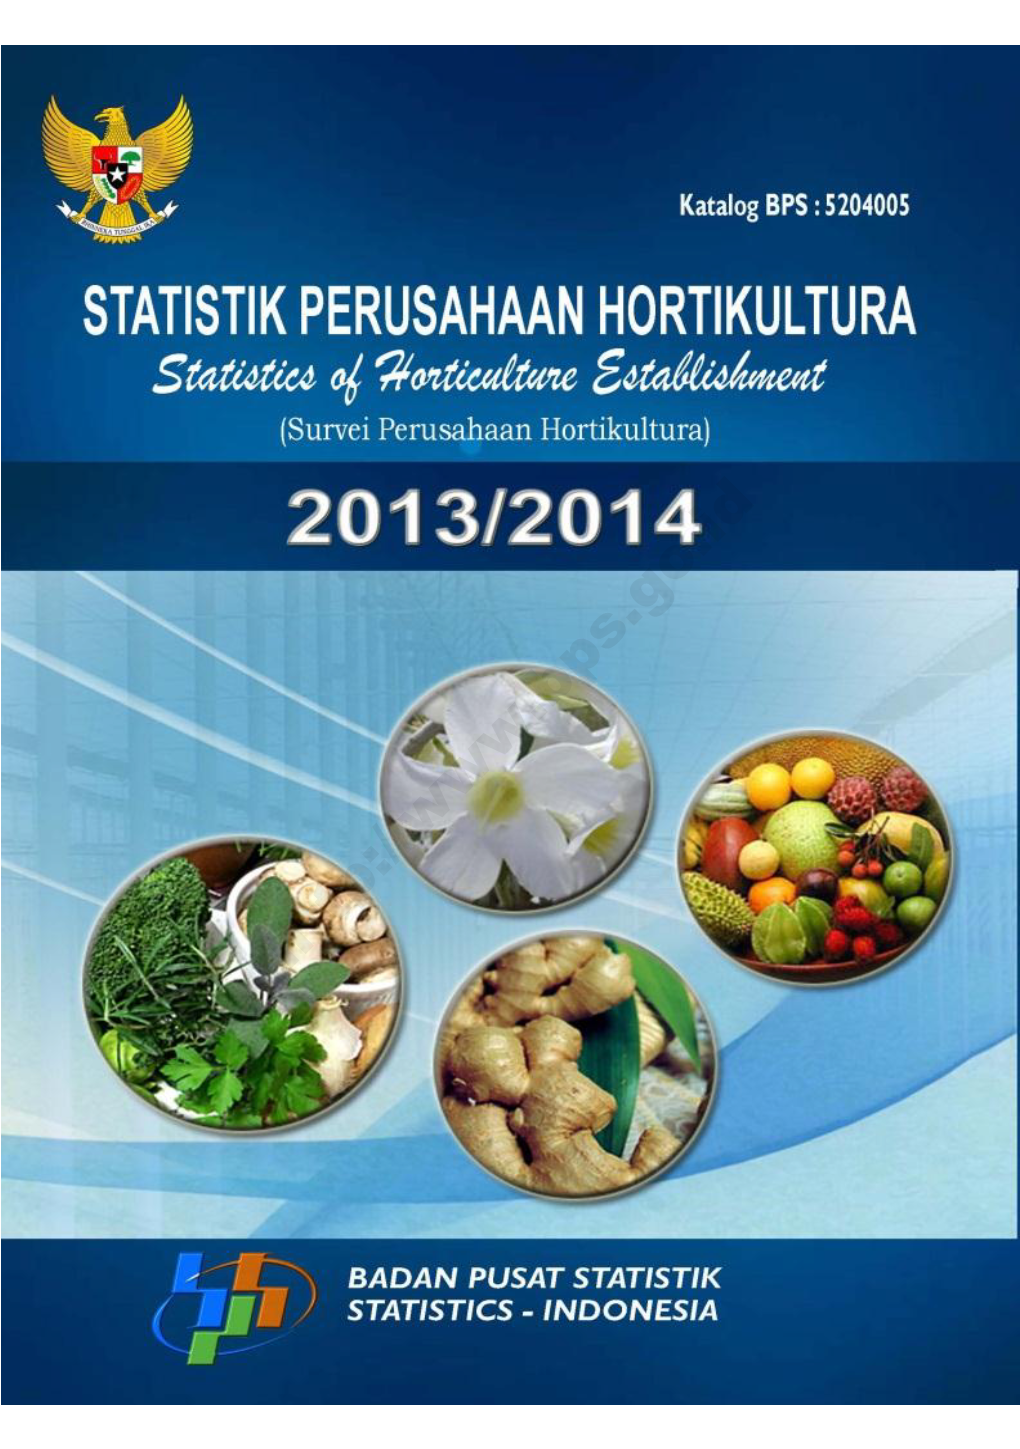 Statistics of Horticulture Establishment 2013/2014